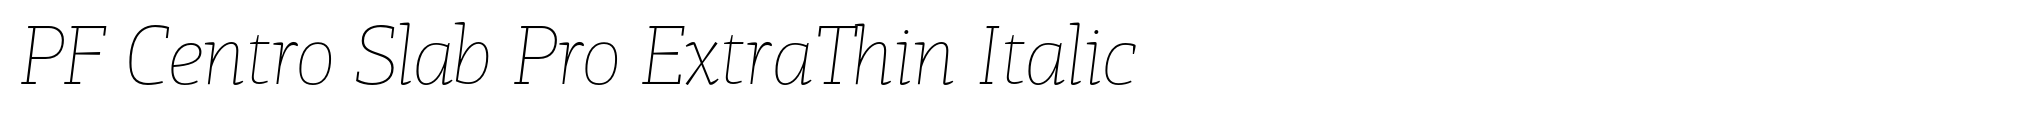 PF Centro Slab Pro ExtraThin Italic image